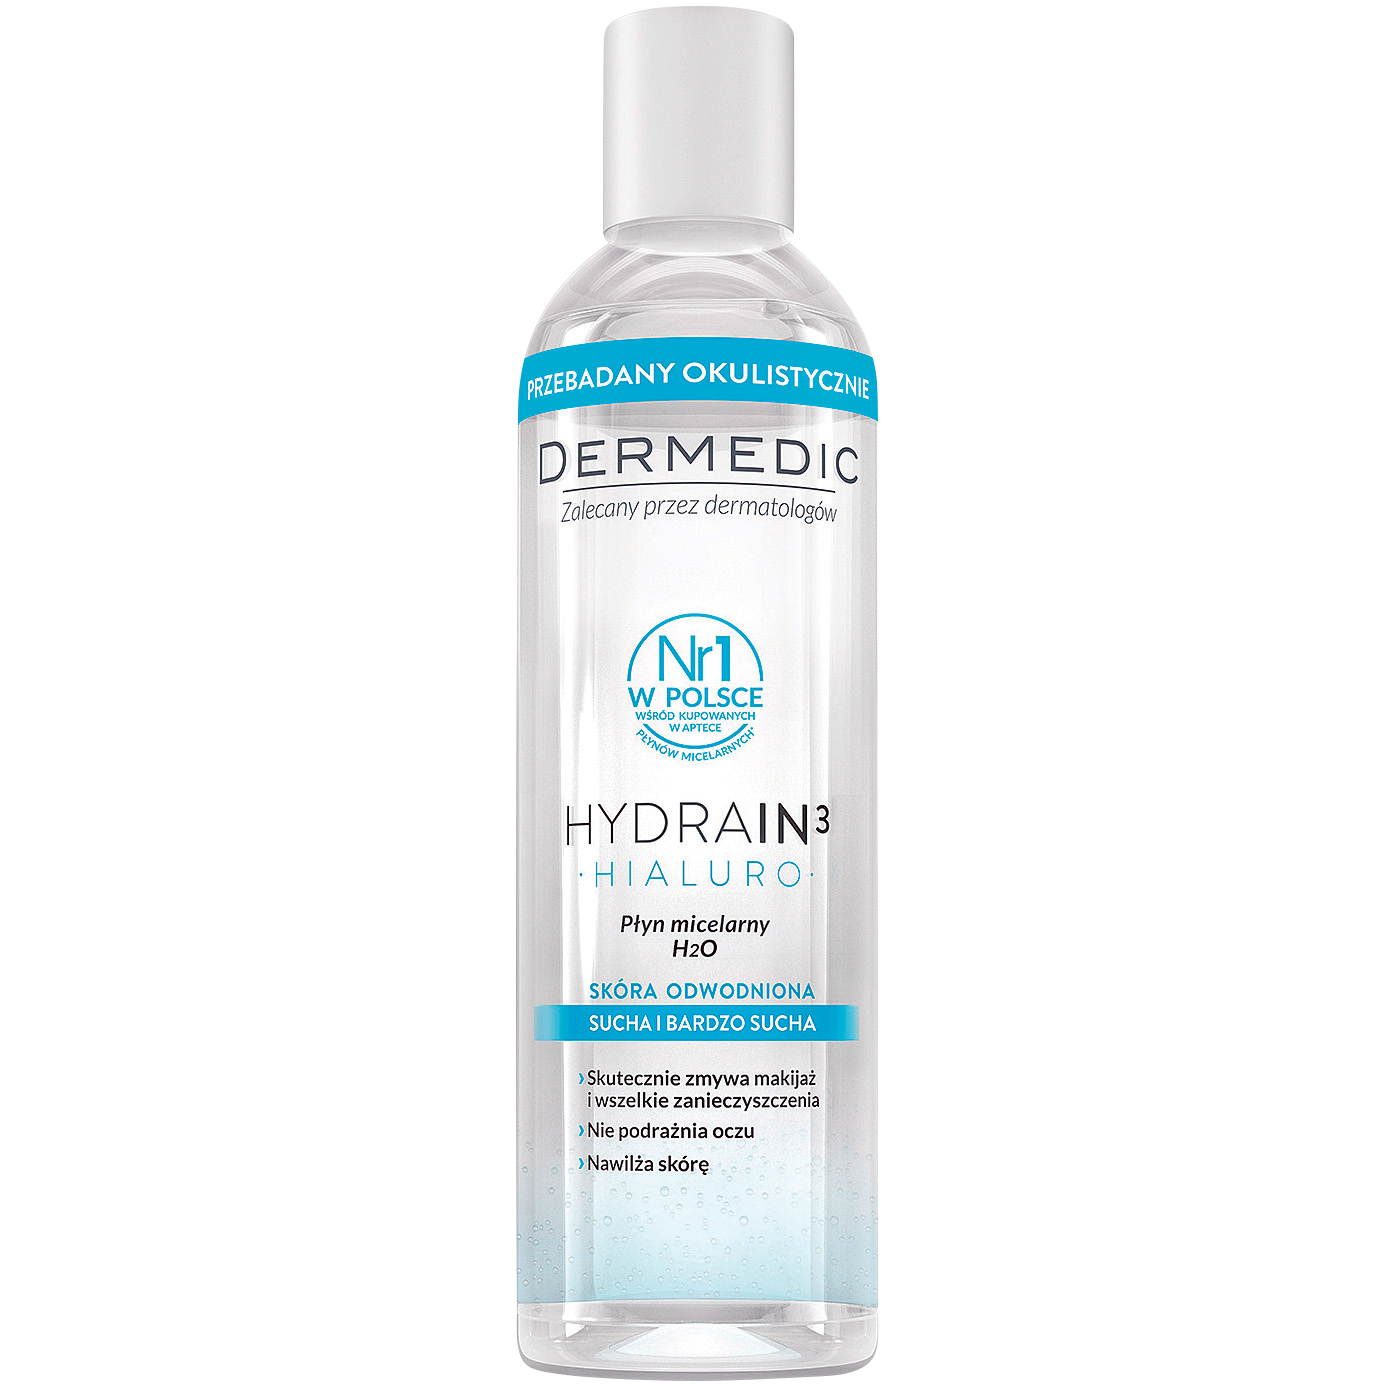 Dermedic Hydrain3 Hialuro мицеллярная вода H2O для лица, 200 мл мицеллярная вода dermedic hydrain3 hialuro h2o 100 мл